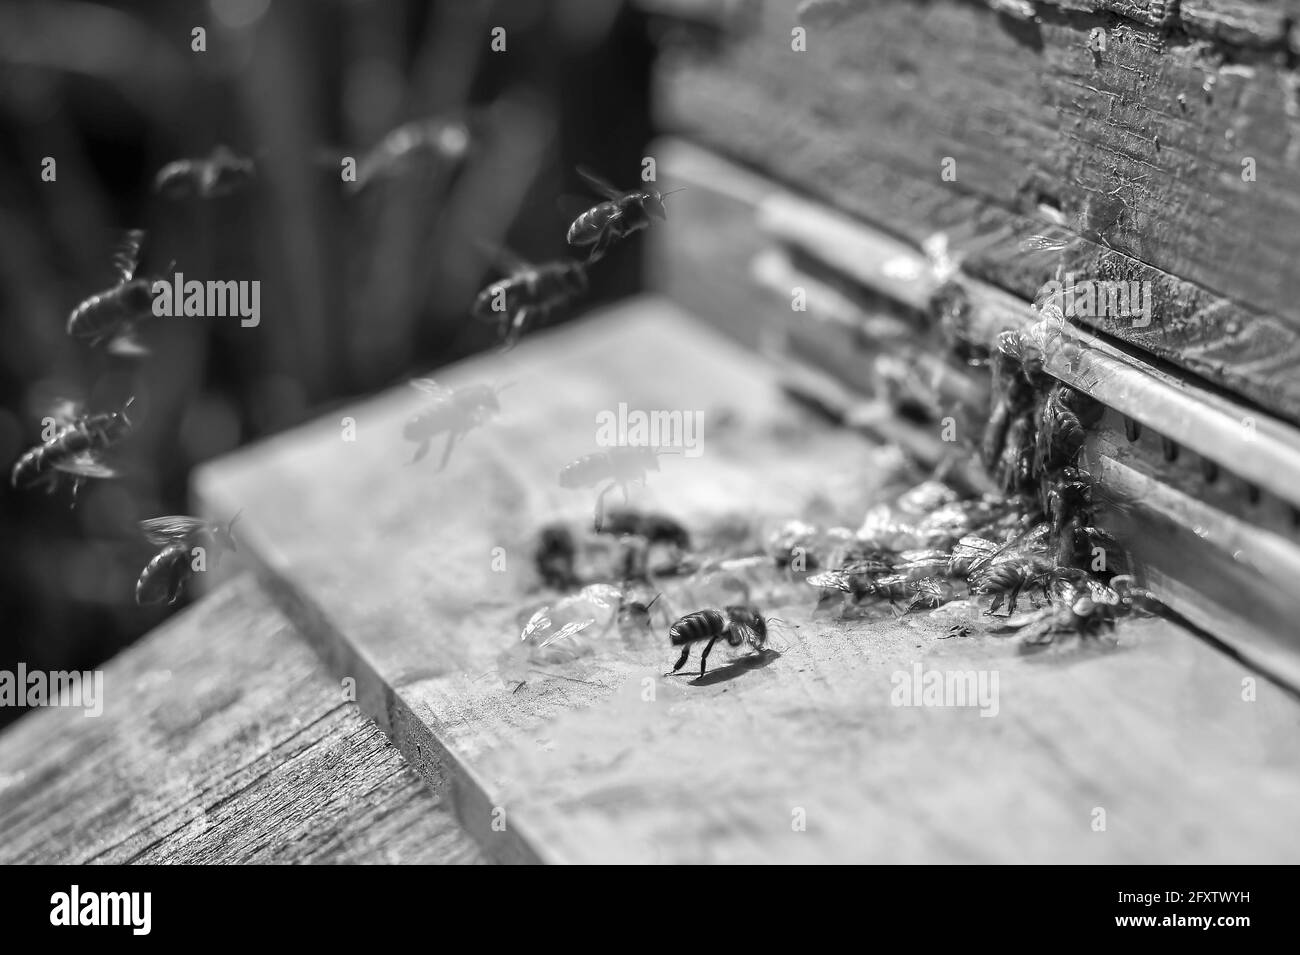 Bienen sammeln Honig und schwärmen um den Bienenstock herum. Das Konzept einer gut koordinierten Arbeit und Organisation. Selektiver Fokus. Schwarzweiß-Foto. Stockfoto